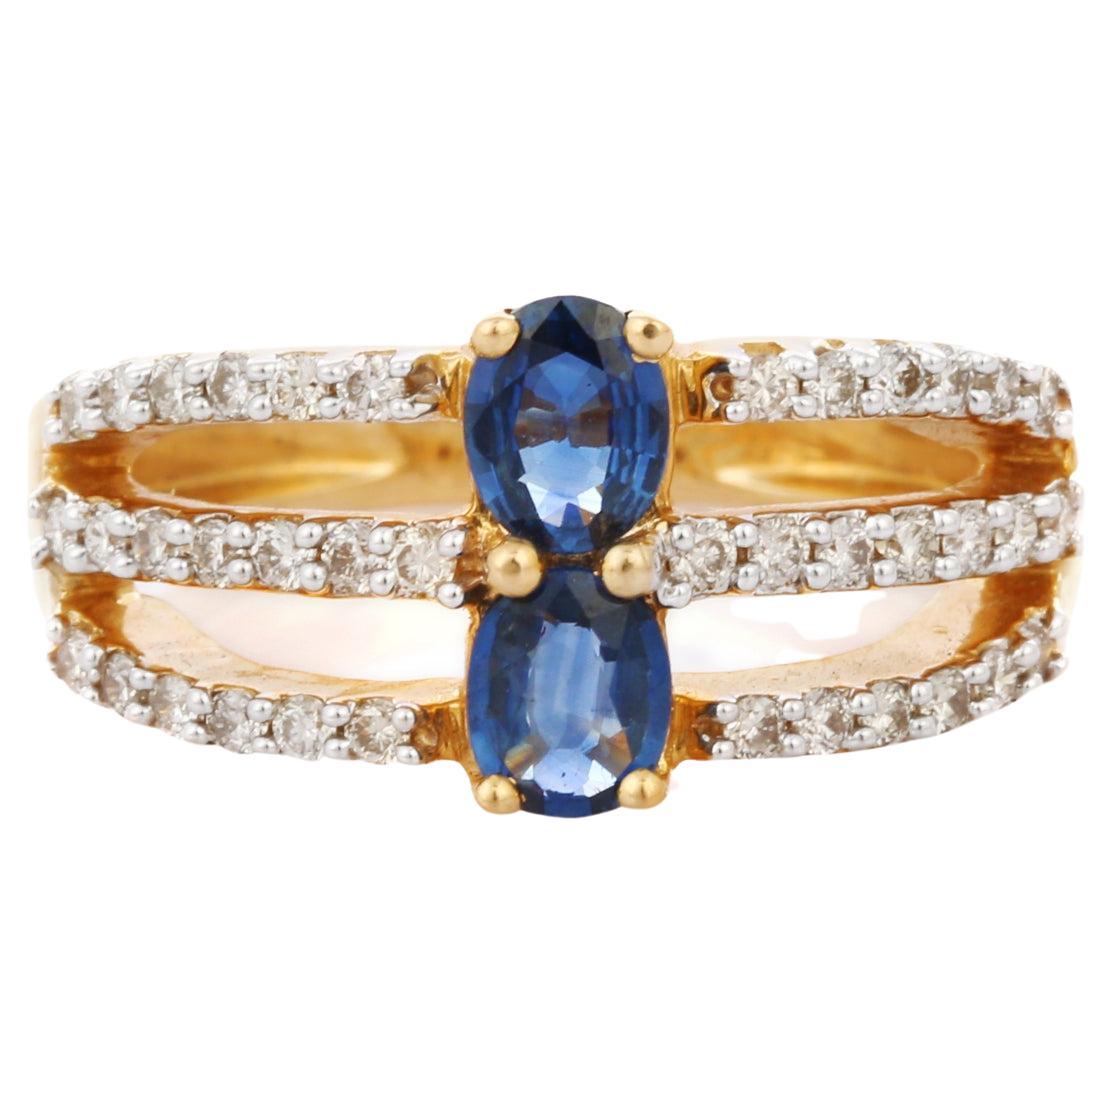 Magnifique bague de fiançailles en or jaune 18 carats avec saphir bleu et diamants